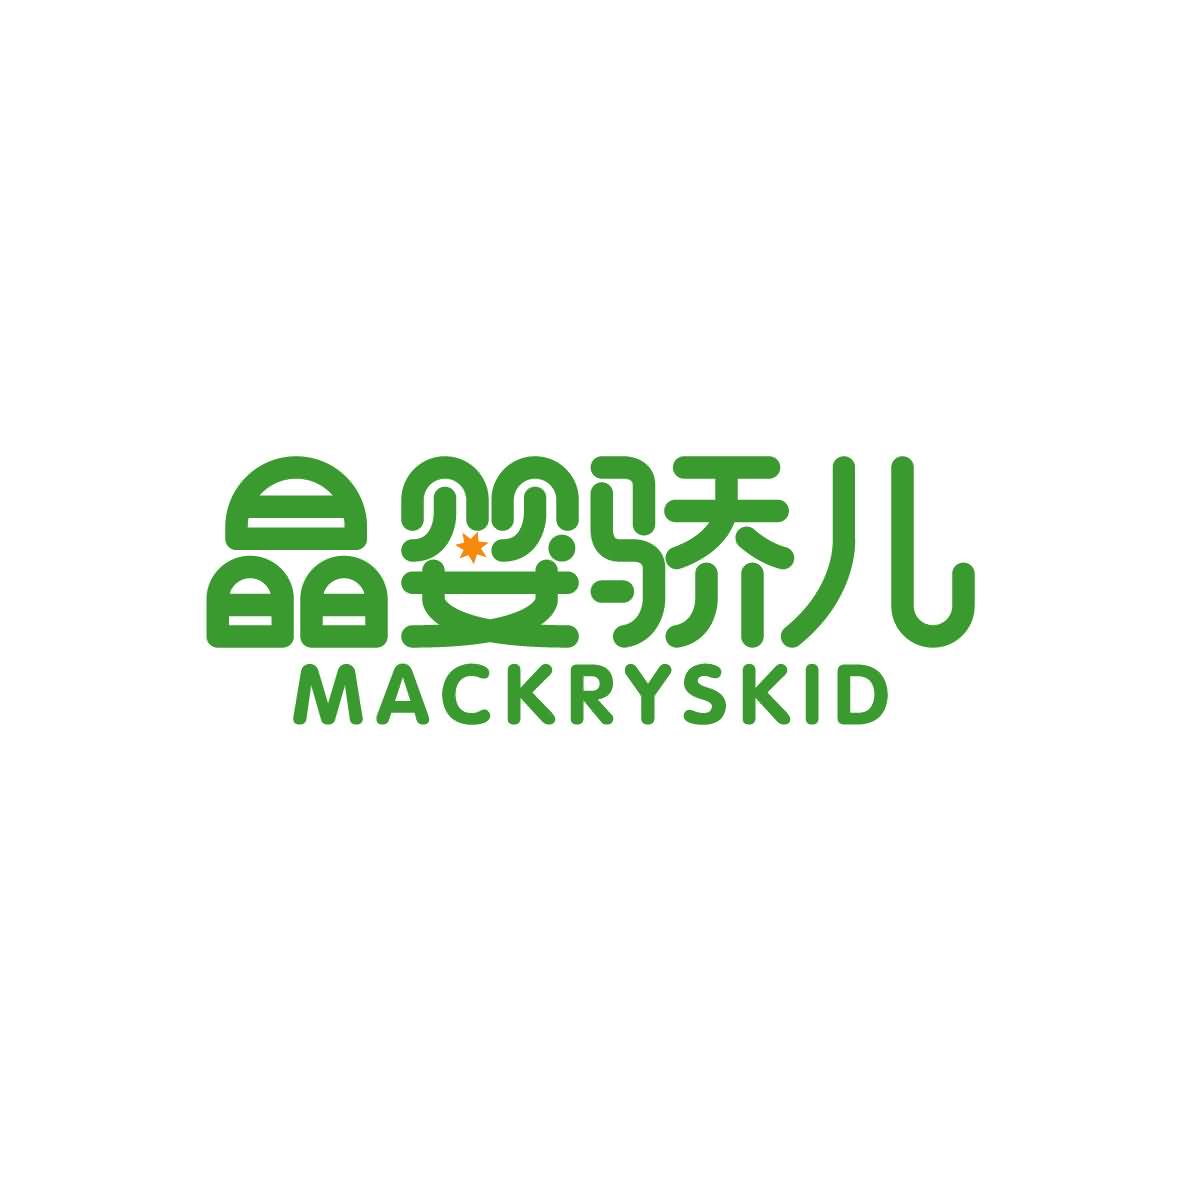 陶世明商标晶婴骄儿 MACKRYSKID（03类）商标转让多少钱？